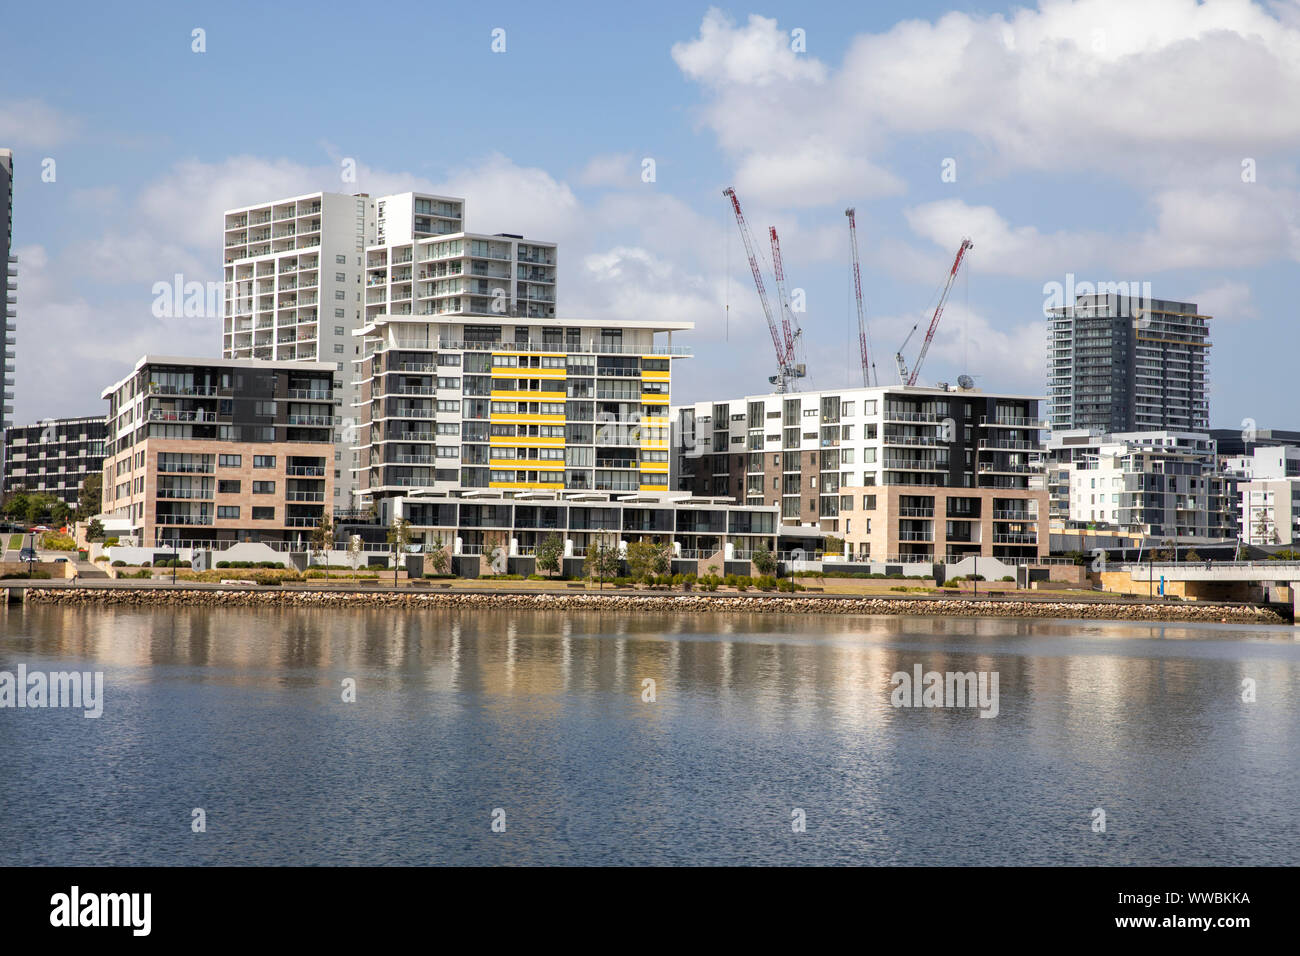 Rhodes, banlieue de Sydney avec les immeubles à appartements et les grues de construction pour le développement, Sydney, Australie Banque D'Images